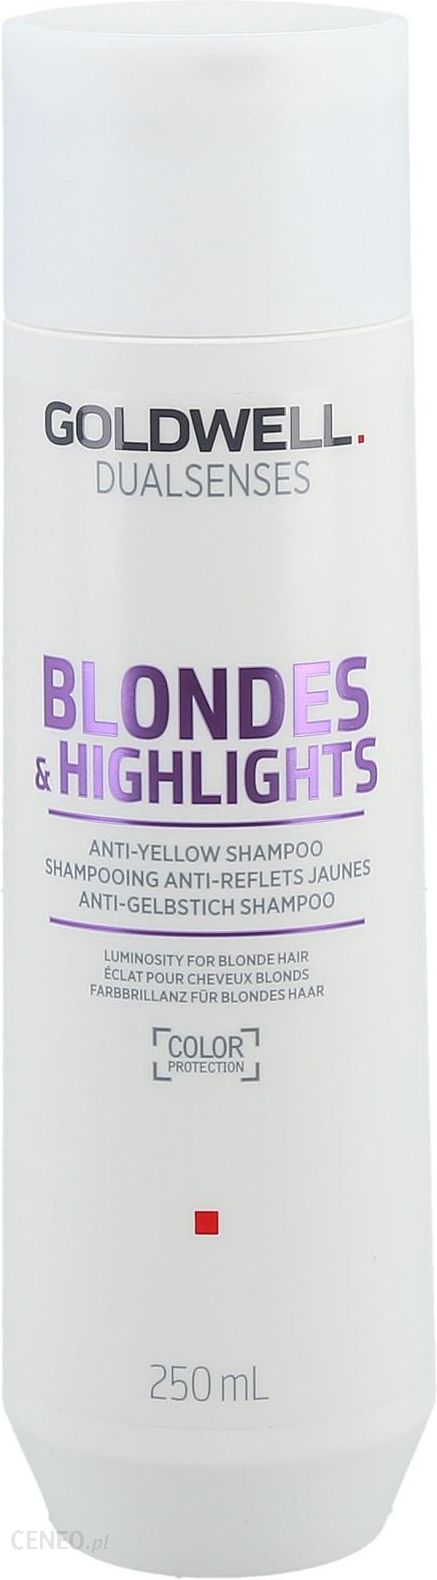 goldwell szampon fioletowy plus odżywka